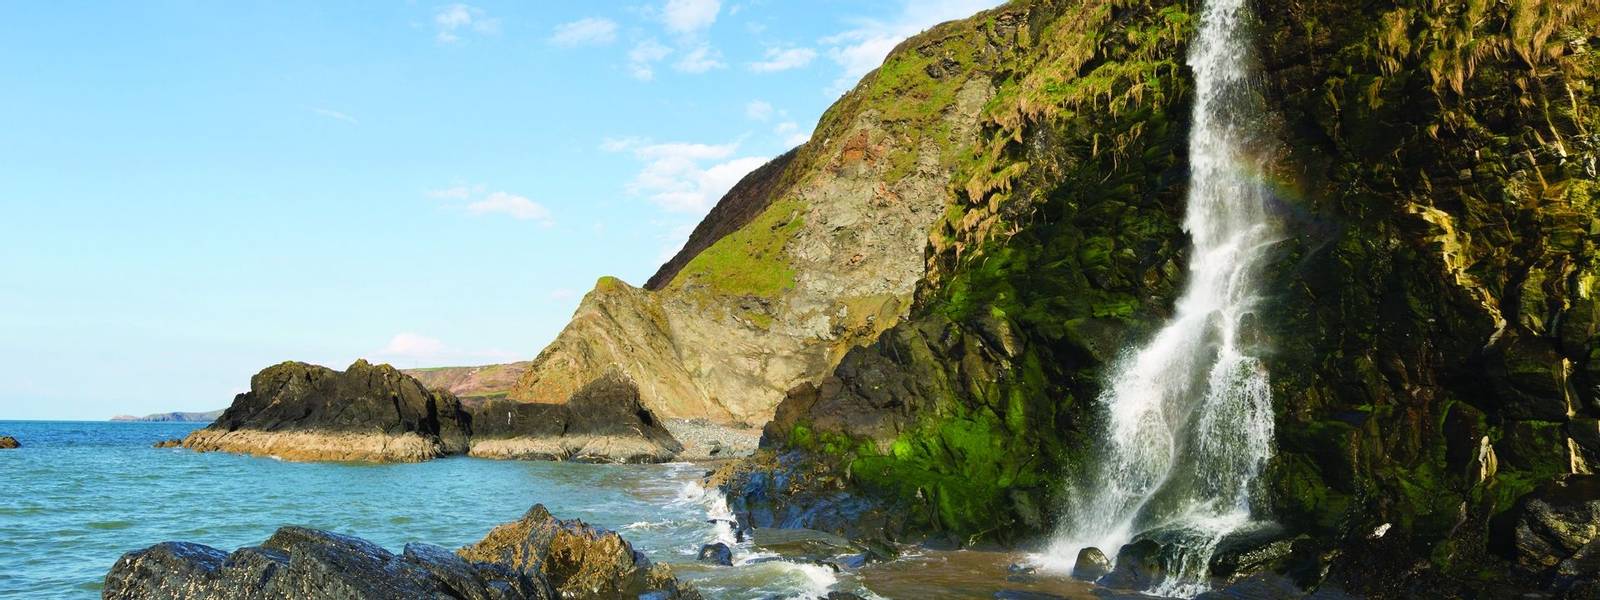 Waterfall at Tresaith Beach, Cardigan Bay, Wales.